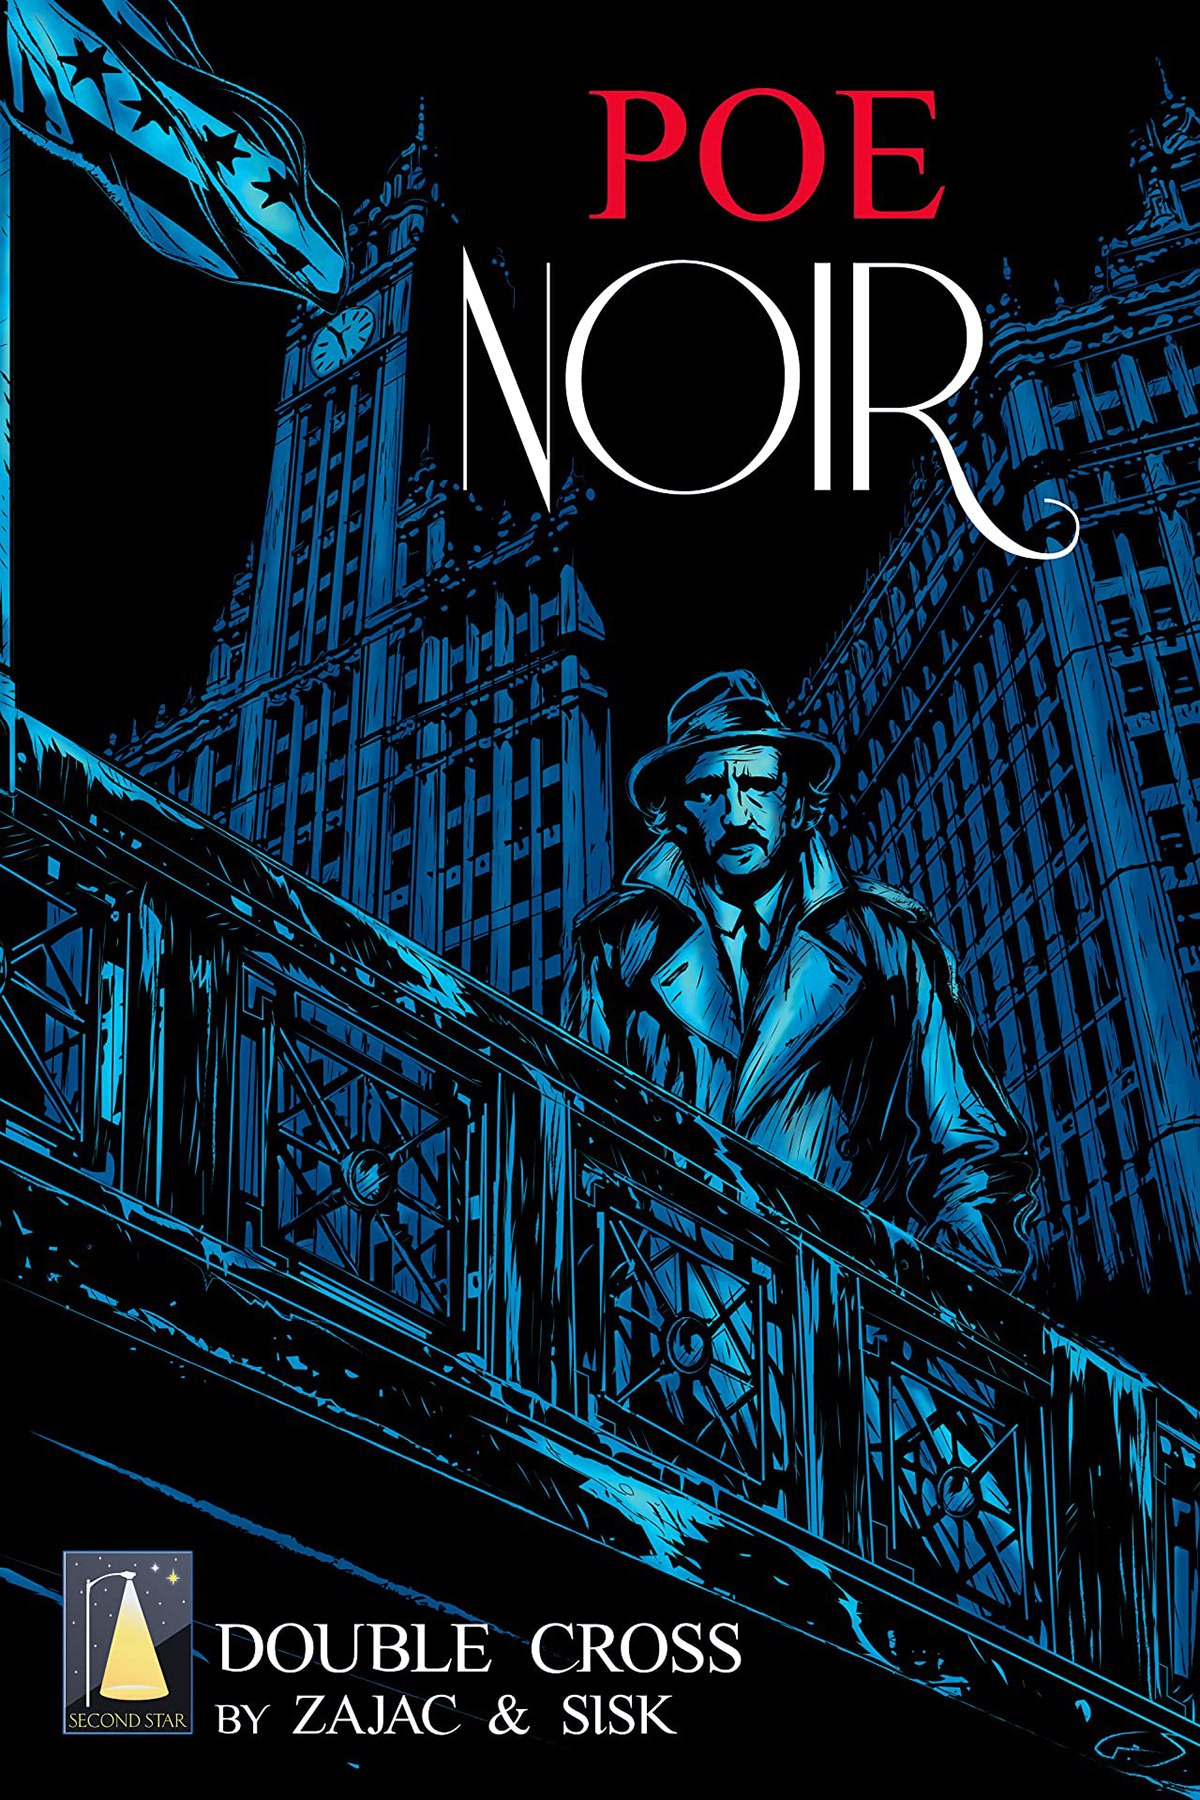 black and white Comic Book digital illustration Drawing  Graphic Novel Horror Art noir poe art edgar allen poe retro style